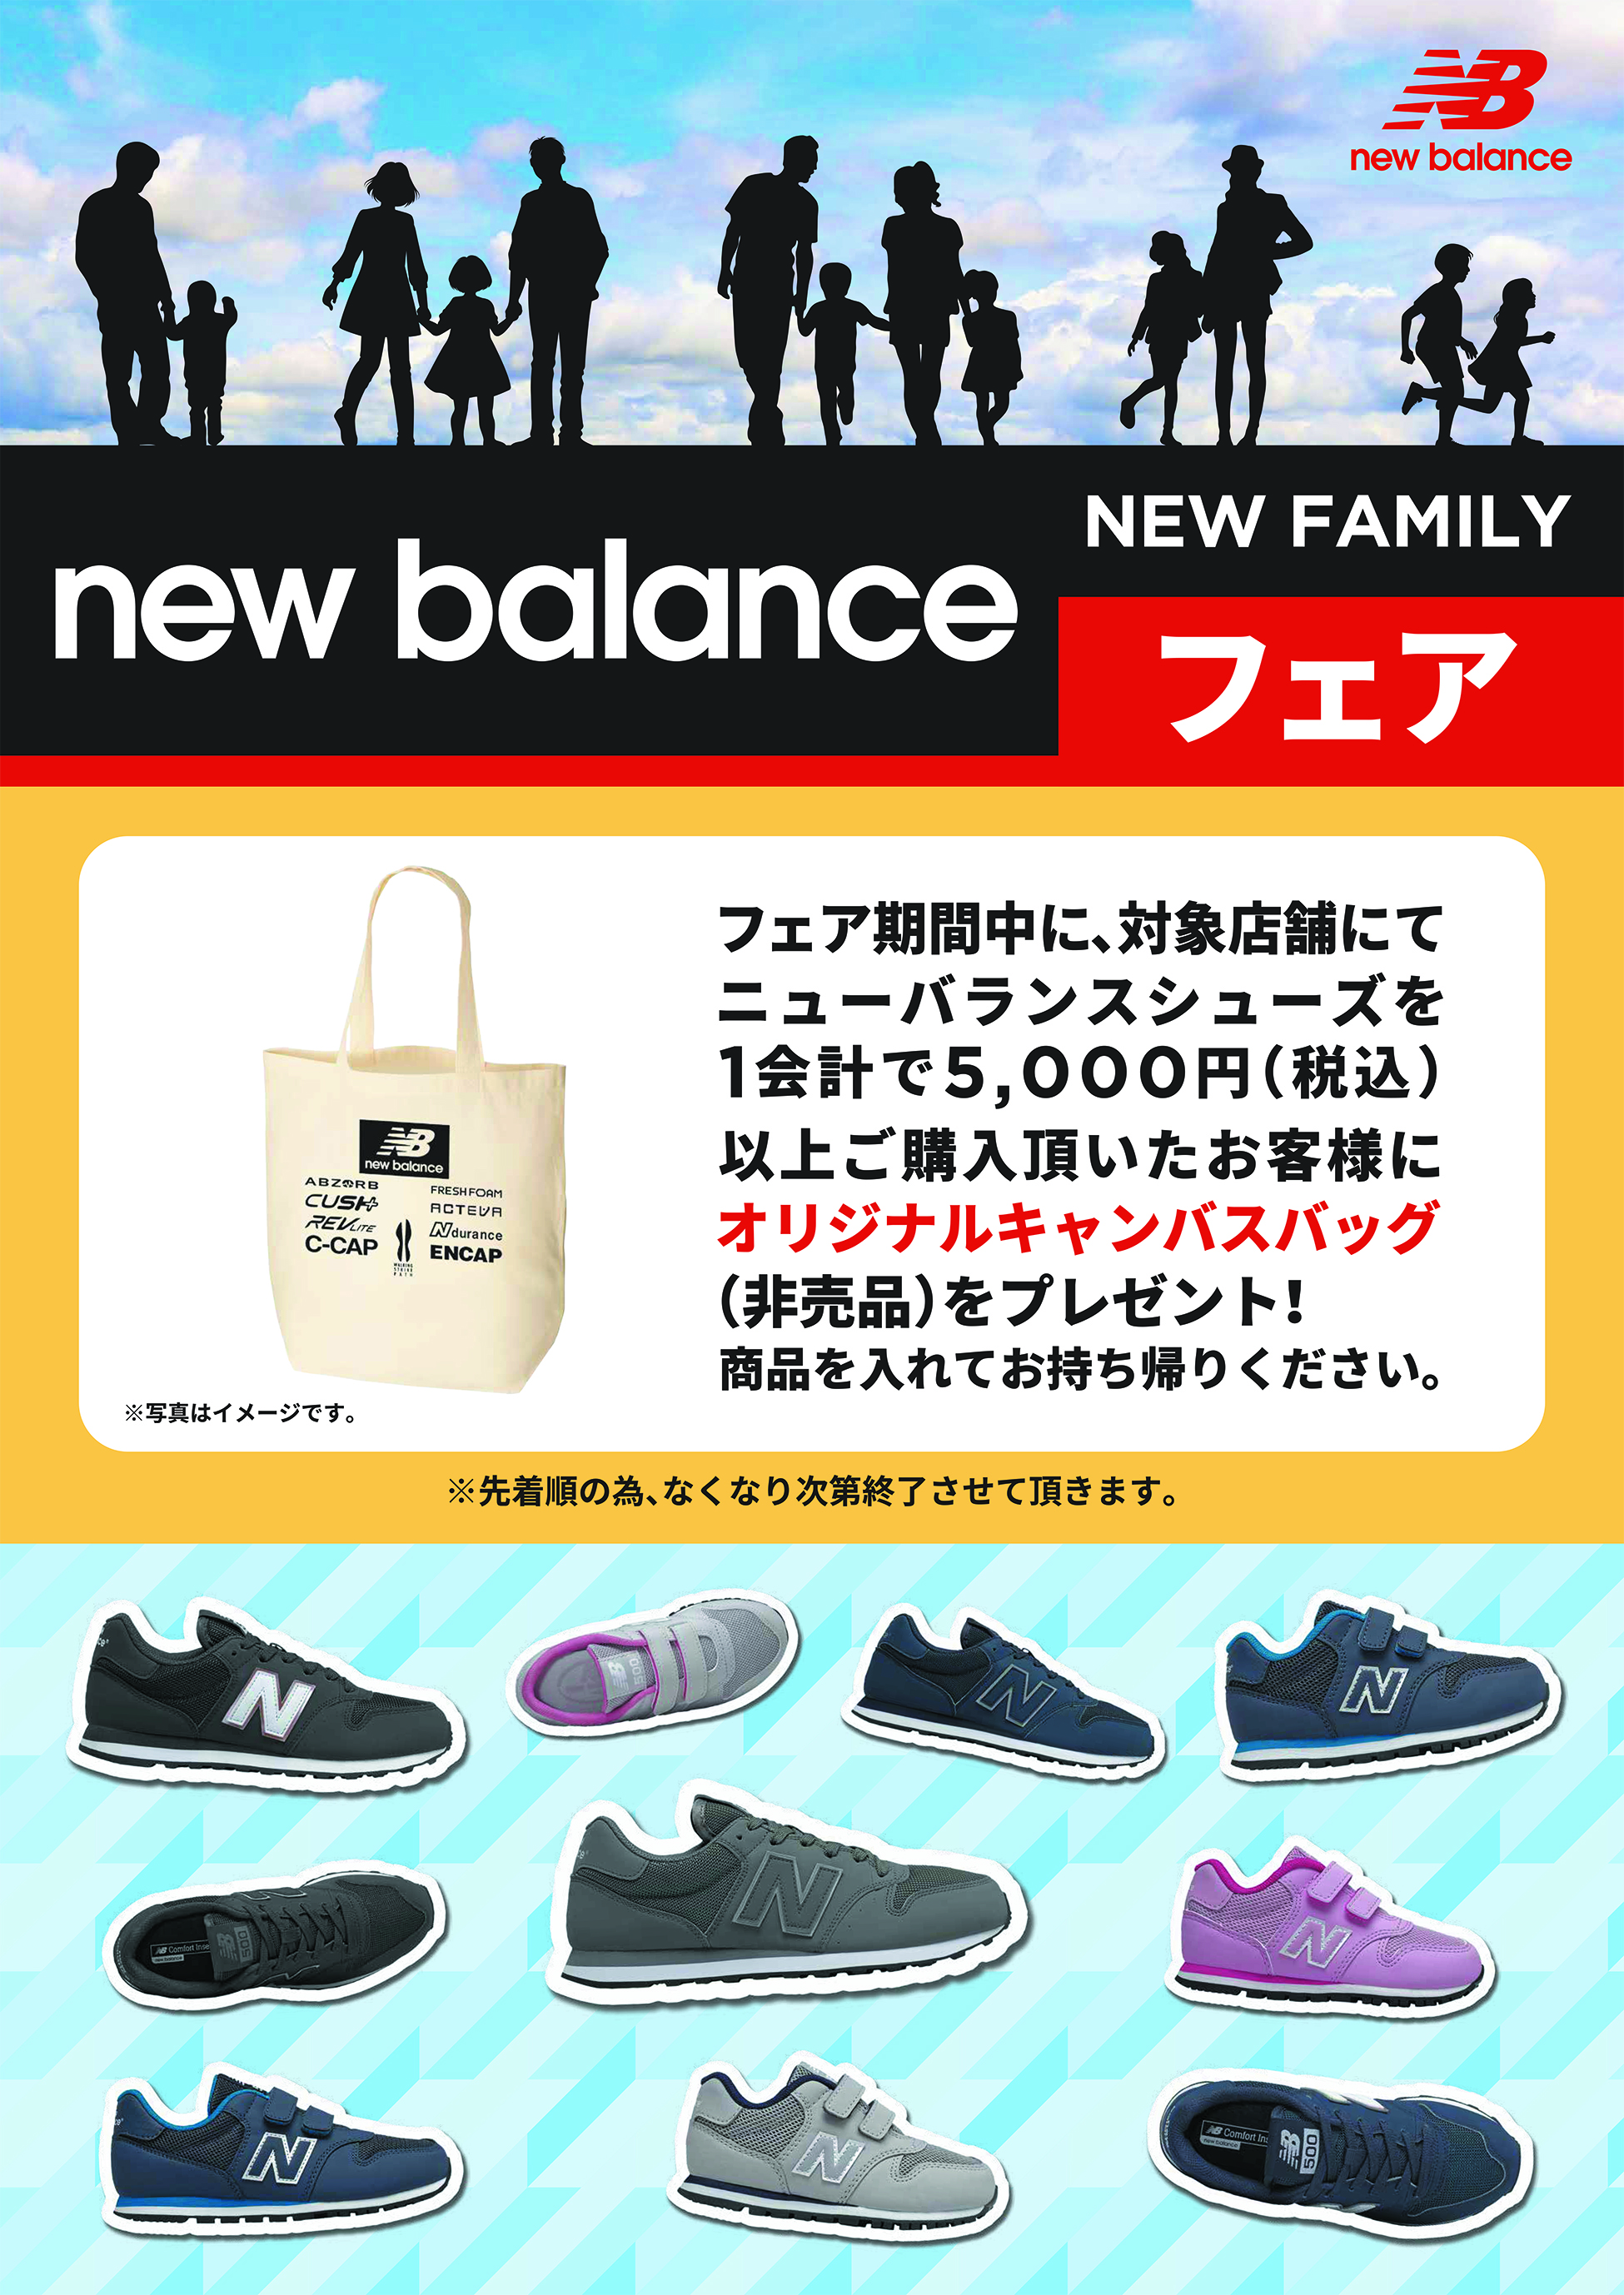 株式会社チヨダ 全国のシュープラザ 東京靴流通センター 公式オンラインショップにて ニューバランス New Family フェア を開催 株式会社チヨダのプレスリリース